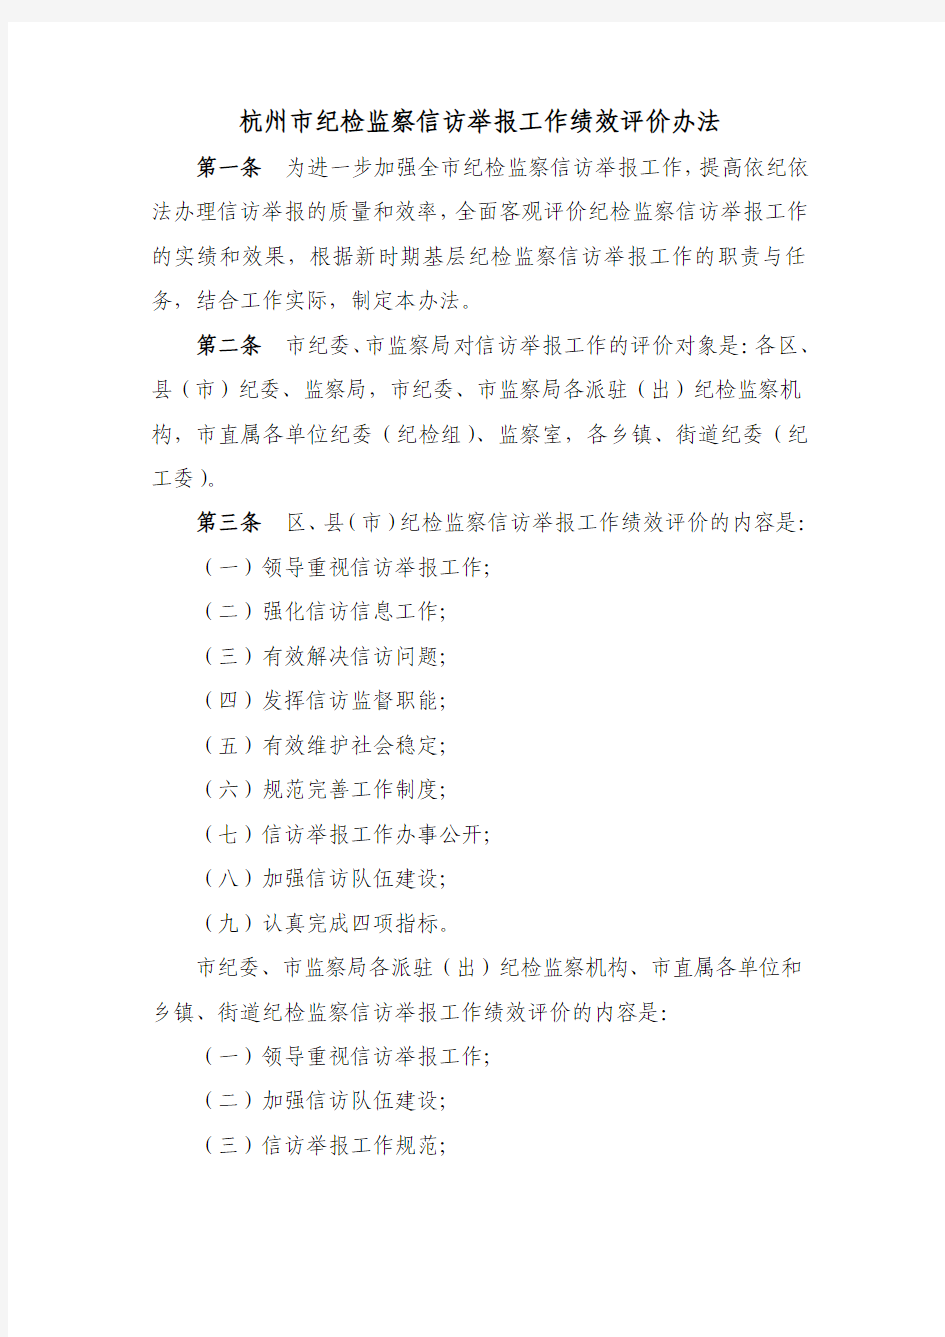 杭州市纪检监察信访举报工作绩效评价办法